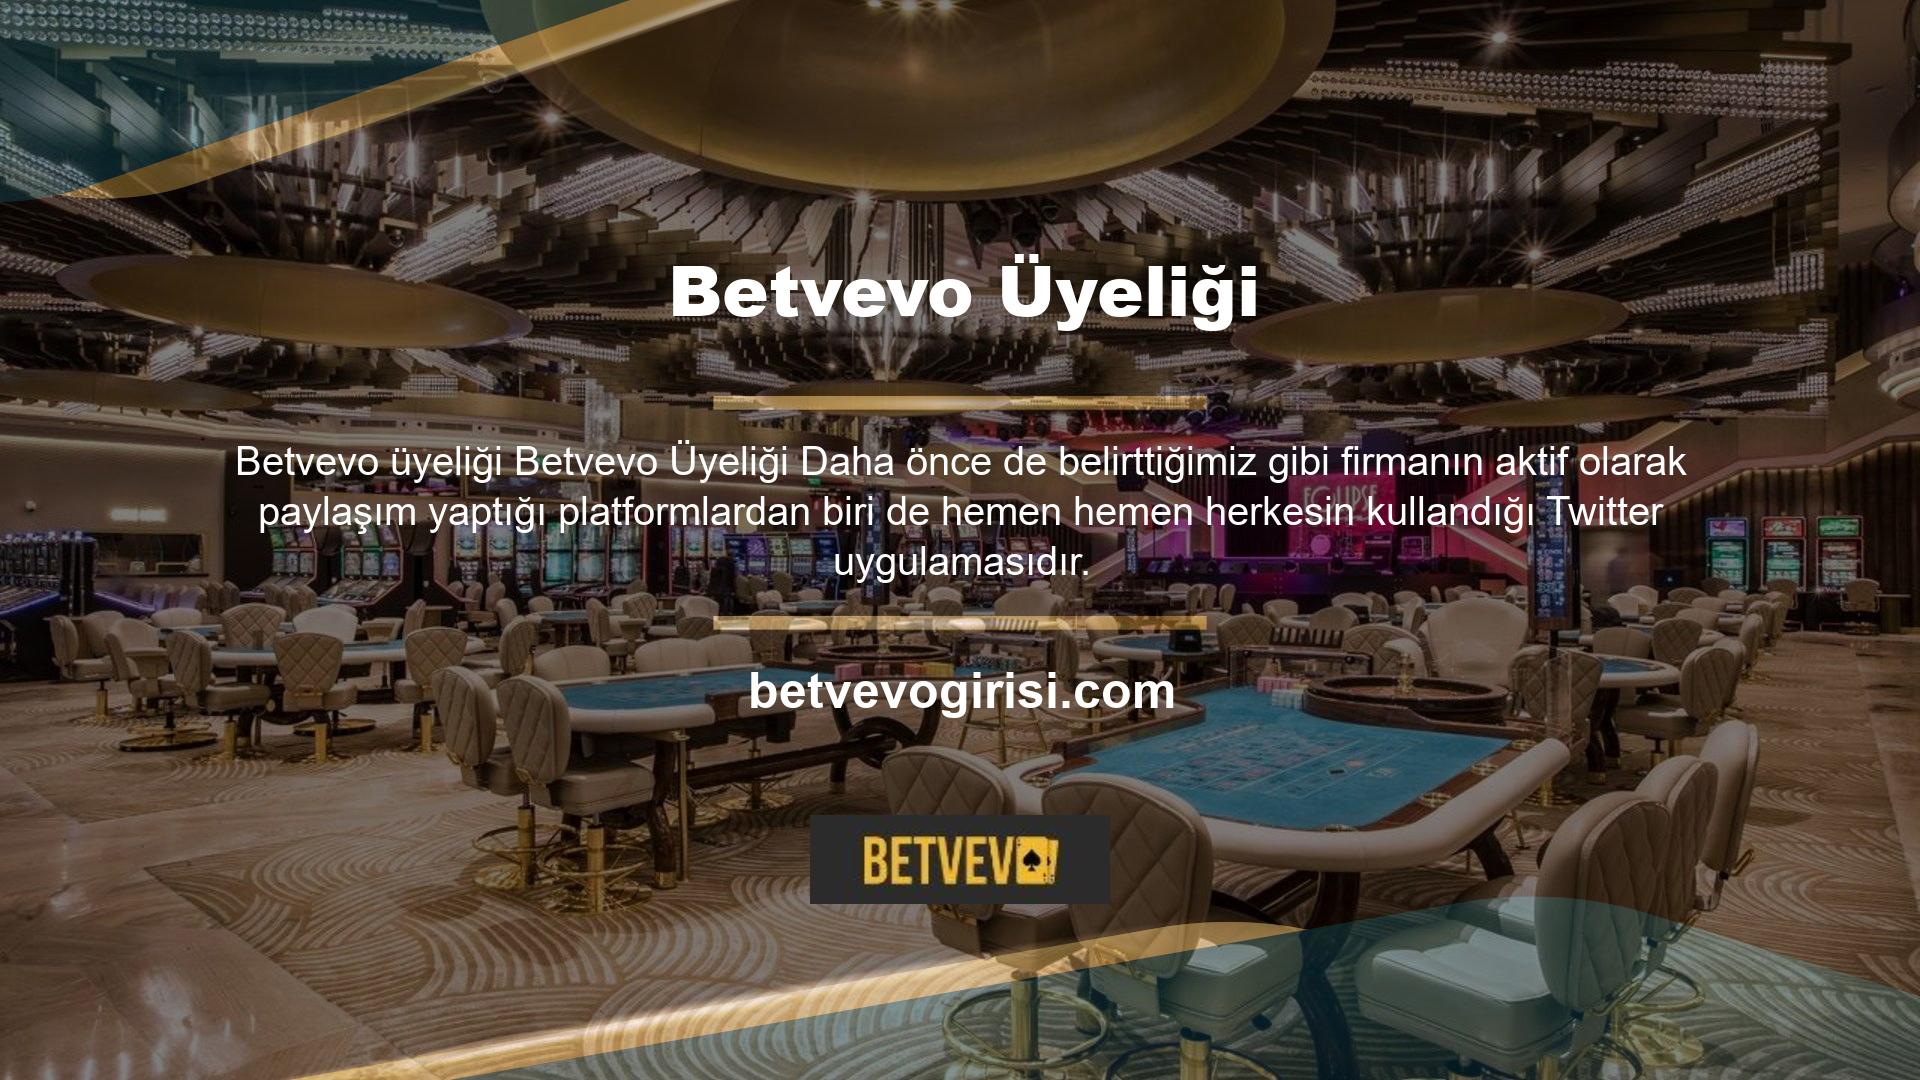 Betvevo Twitter'a üye olabilmek için elbette öncelikle başvuruda bulunmanız ve kayıt adımlarını başarıyla tamamlamanız gerekiyor